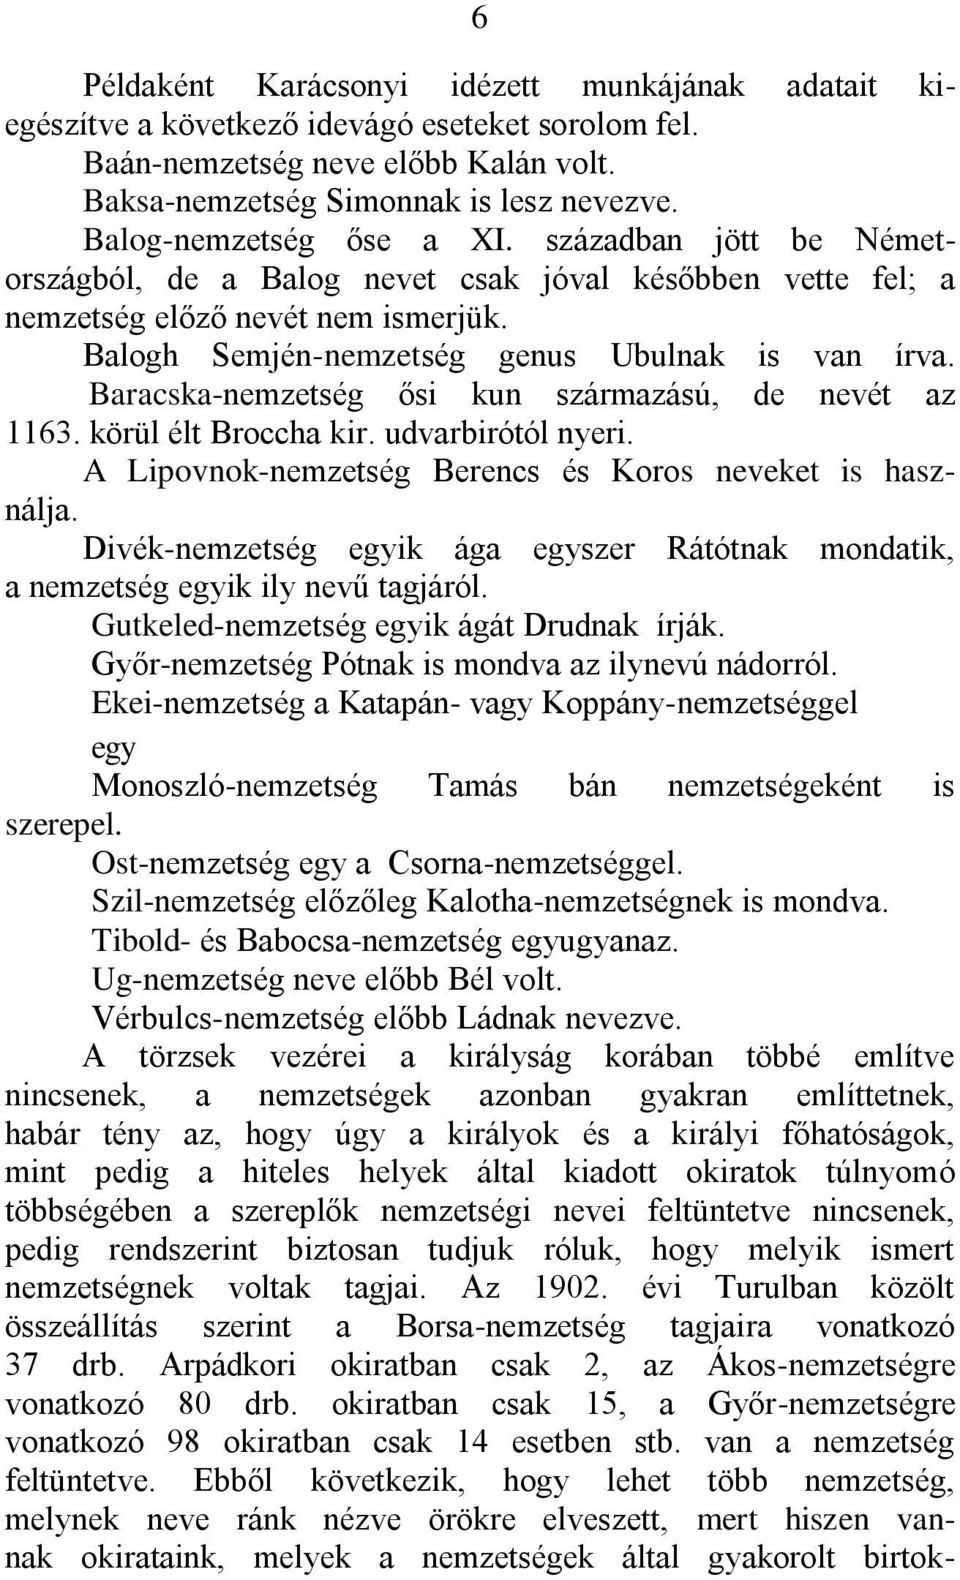 Baracska-nemzetség ősi kun származású, de nevét az 1163. körül élt Broccha kir. udvarbirótól nyeri. A Lipovnok-nemzetség Berencs és Koros neveket is használja.